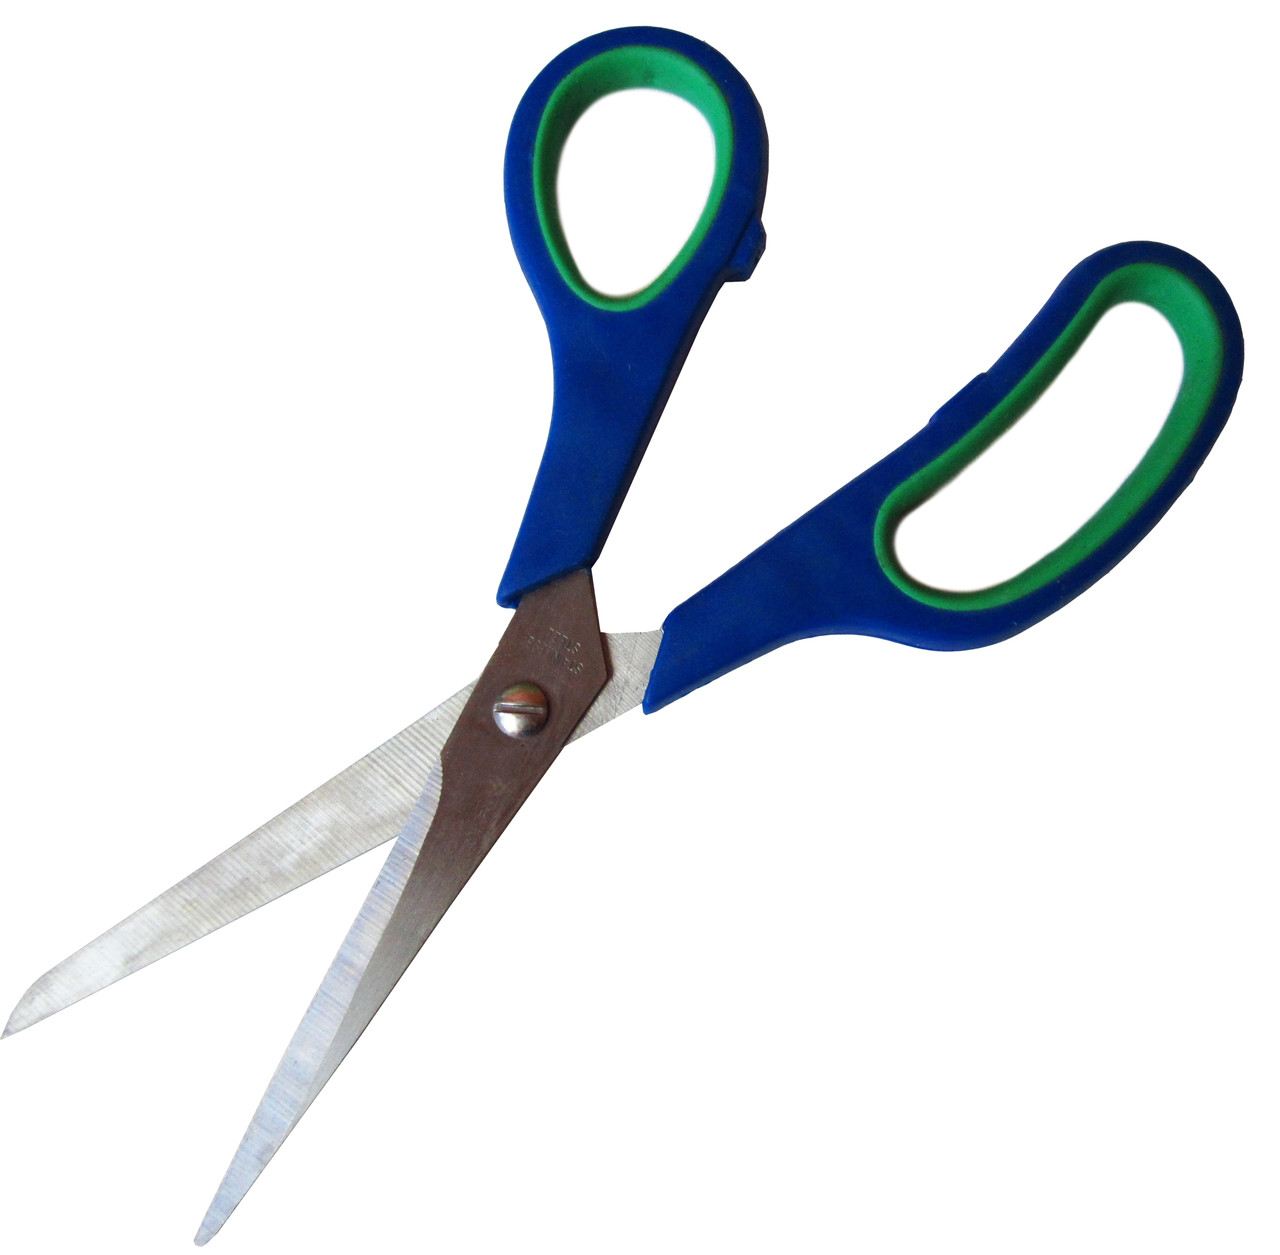  с зеленой ручкой №8, швейные ножницы, ножницы для рукоделия .